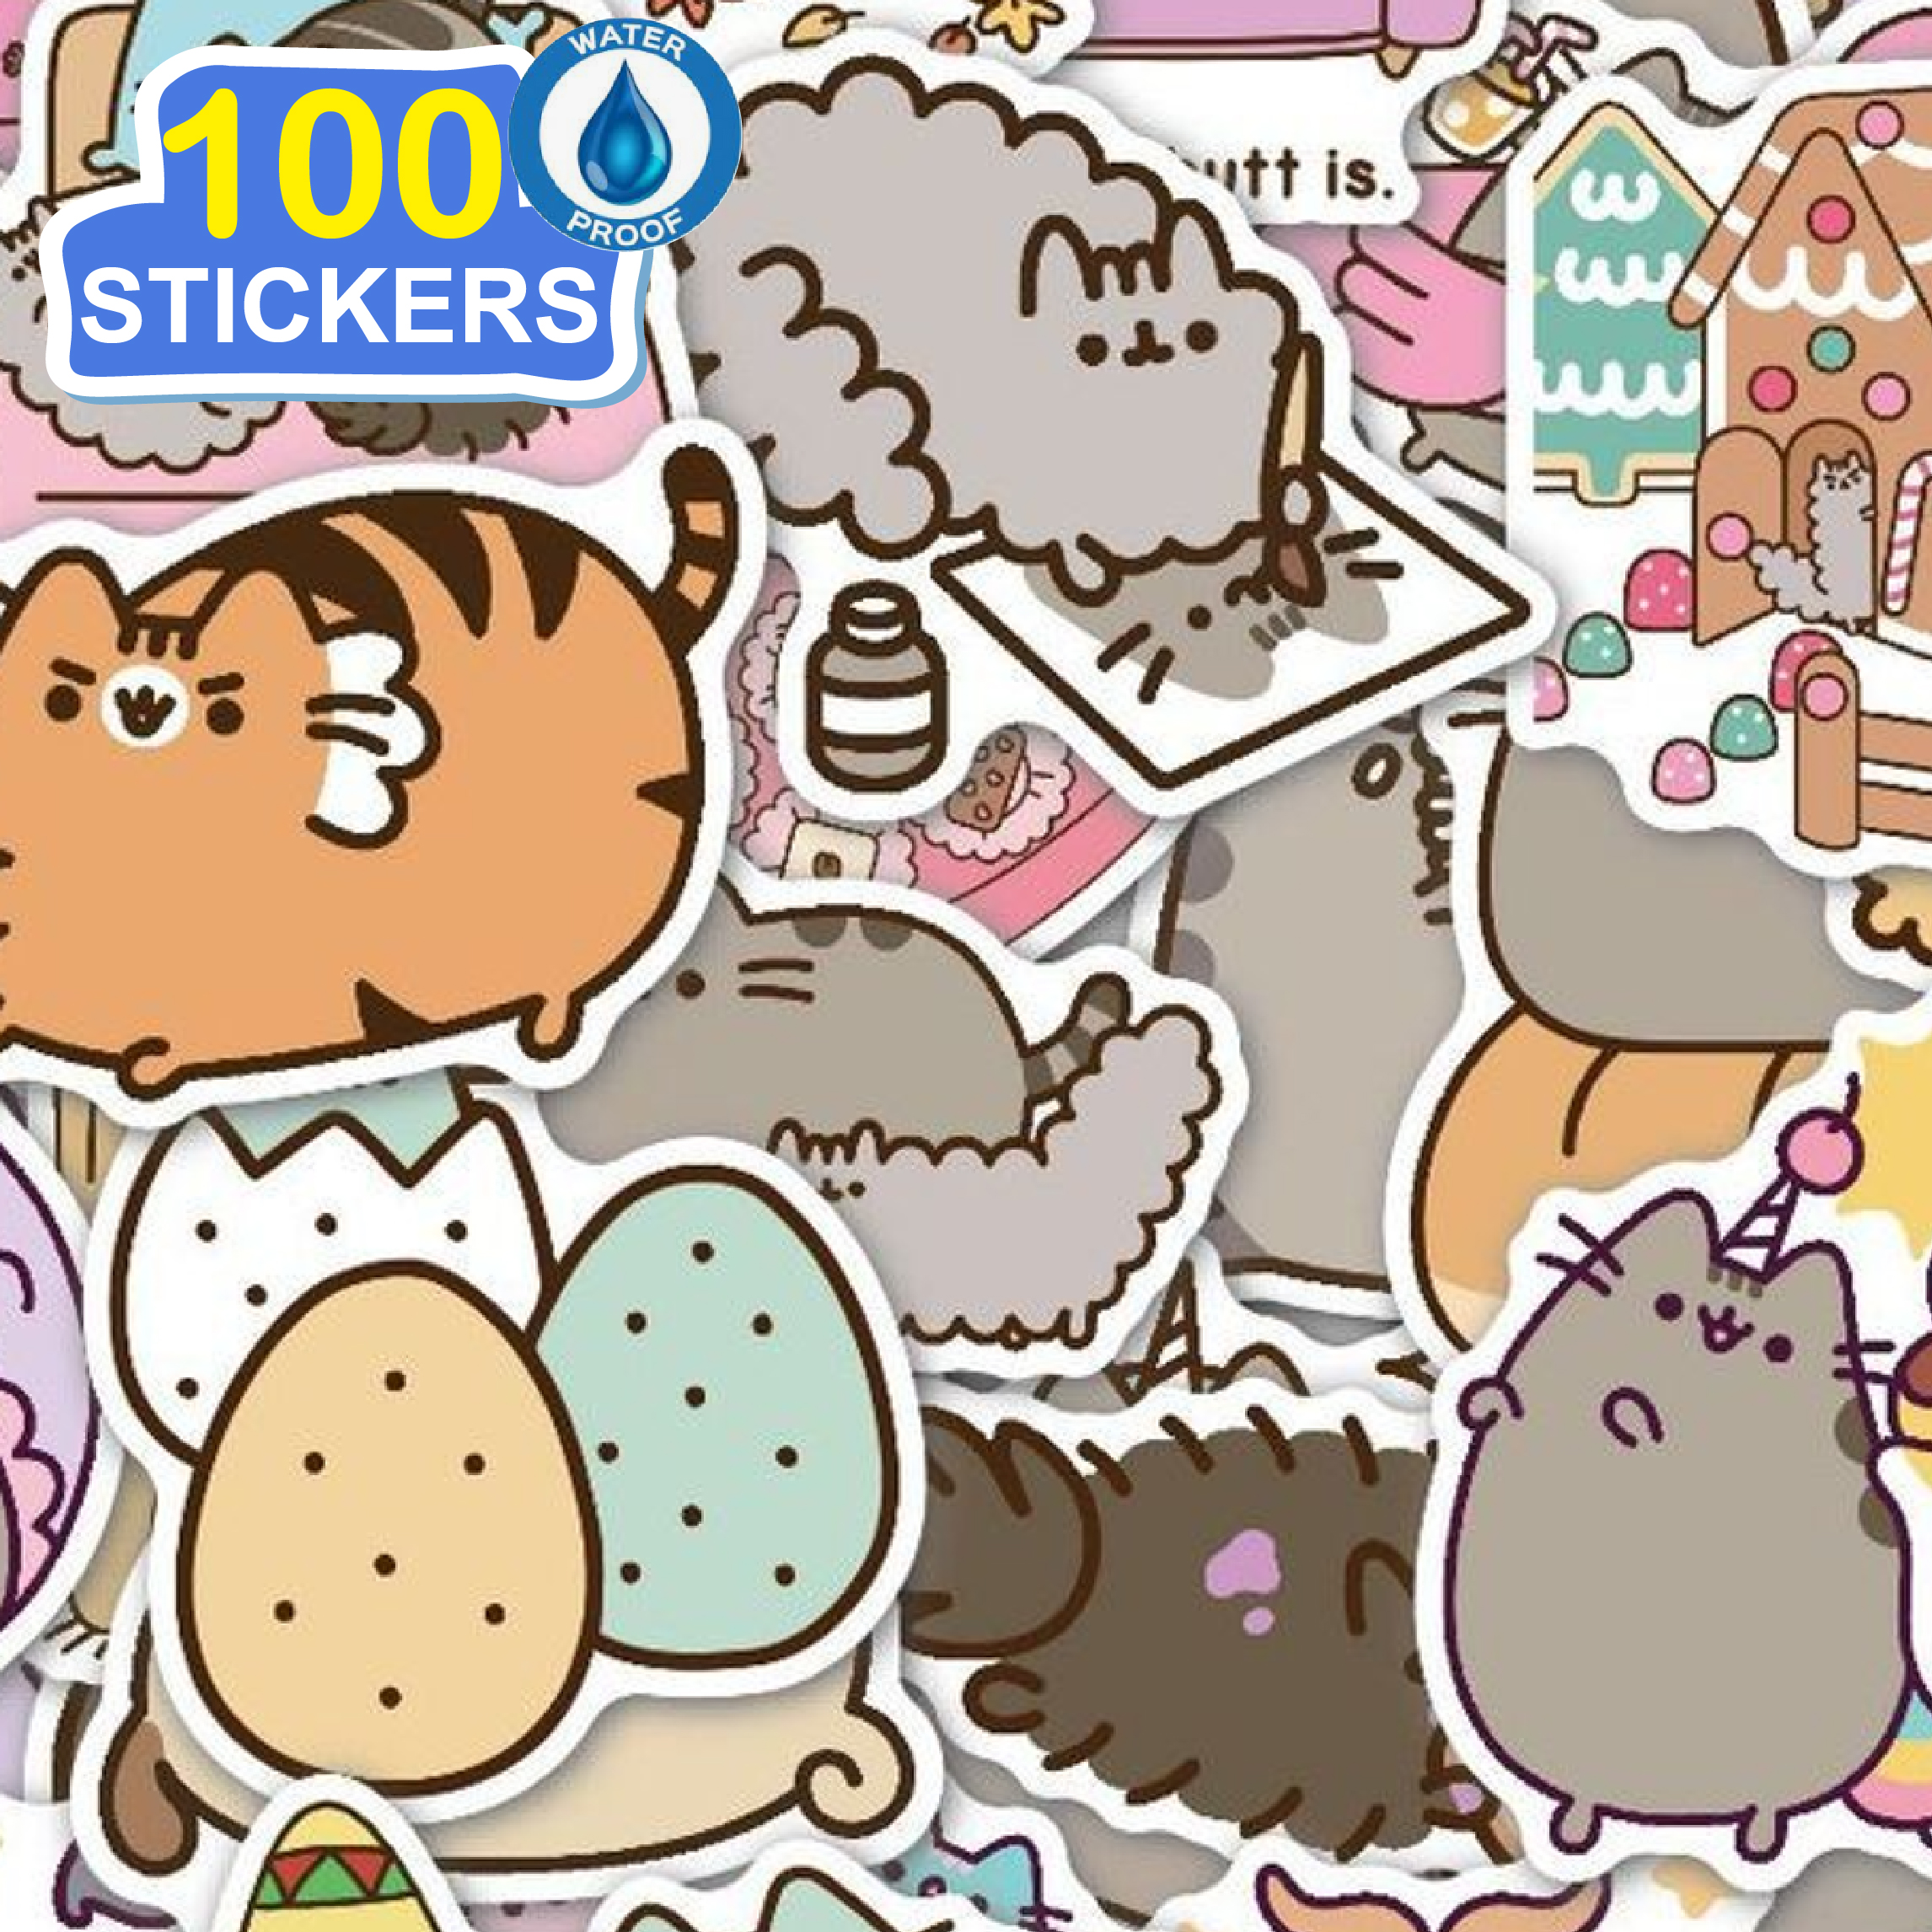 100 Stickers hoạt hình mèo ú hình dán dễ thương trang trí laptop, điện thoại, ipad, cốc nước, sổ tay, vali du lịch, scooter, ván trược - Chống thấm nước - FiDi